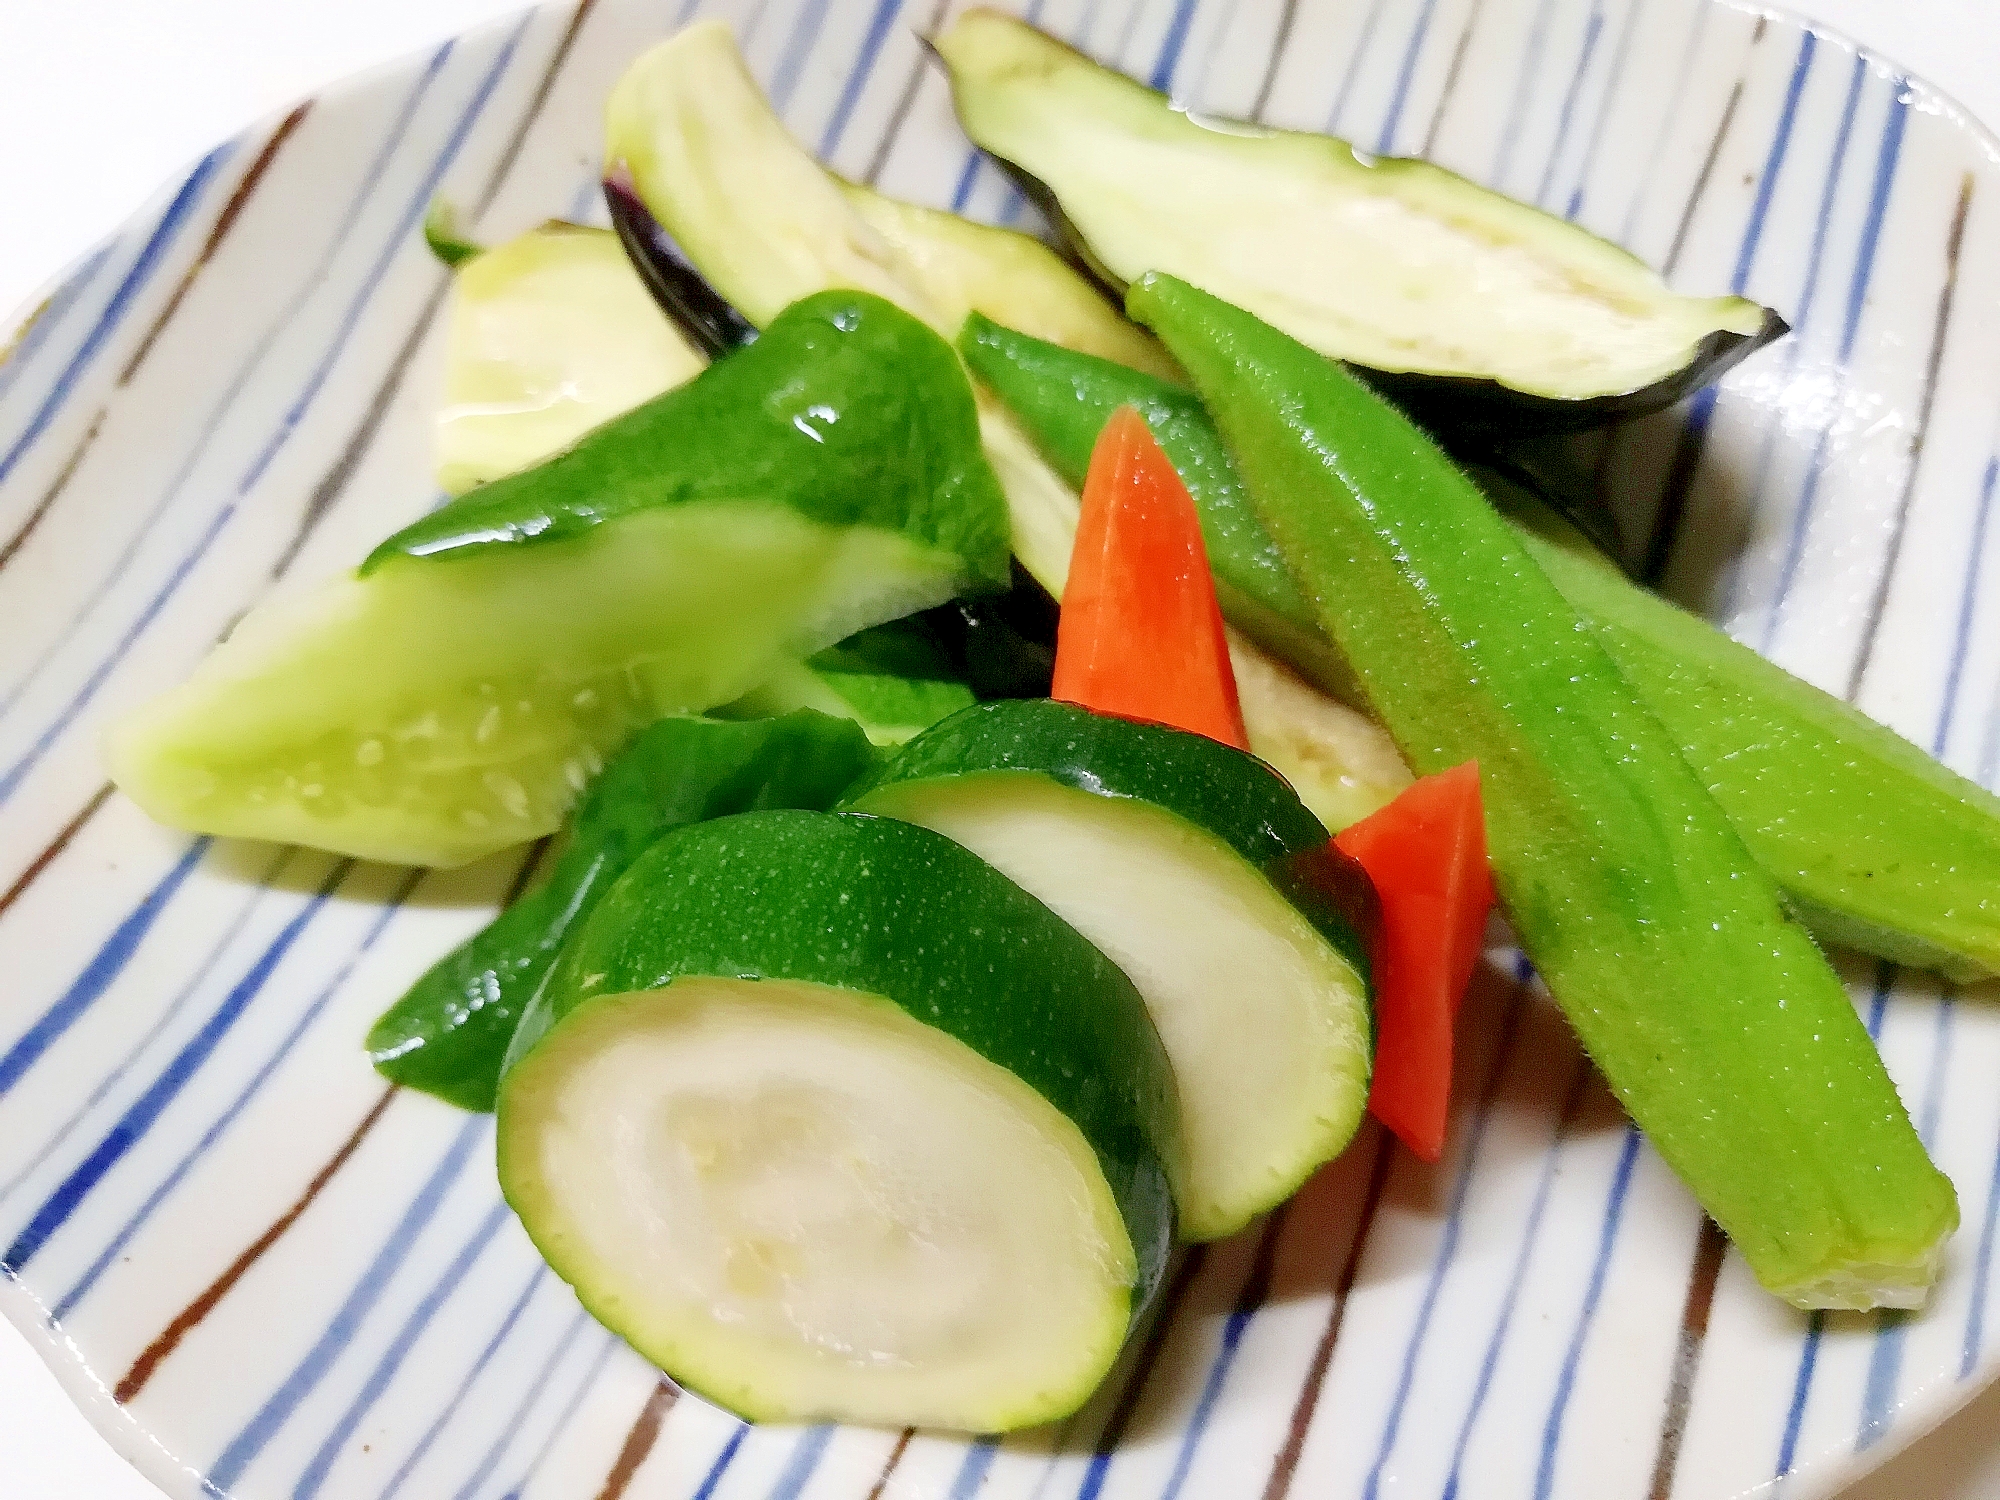 漬け汁を作ってポイポイいれて、夏野菜の漬物